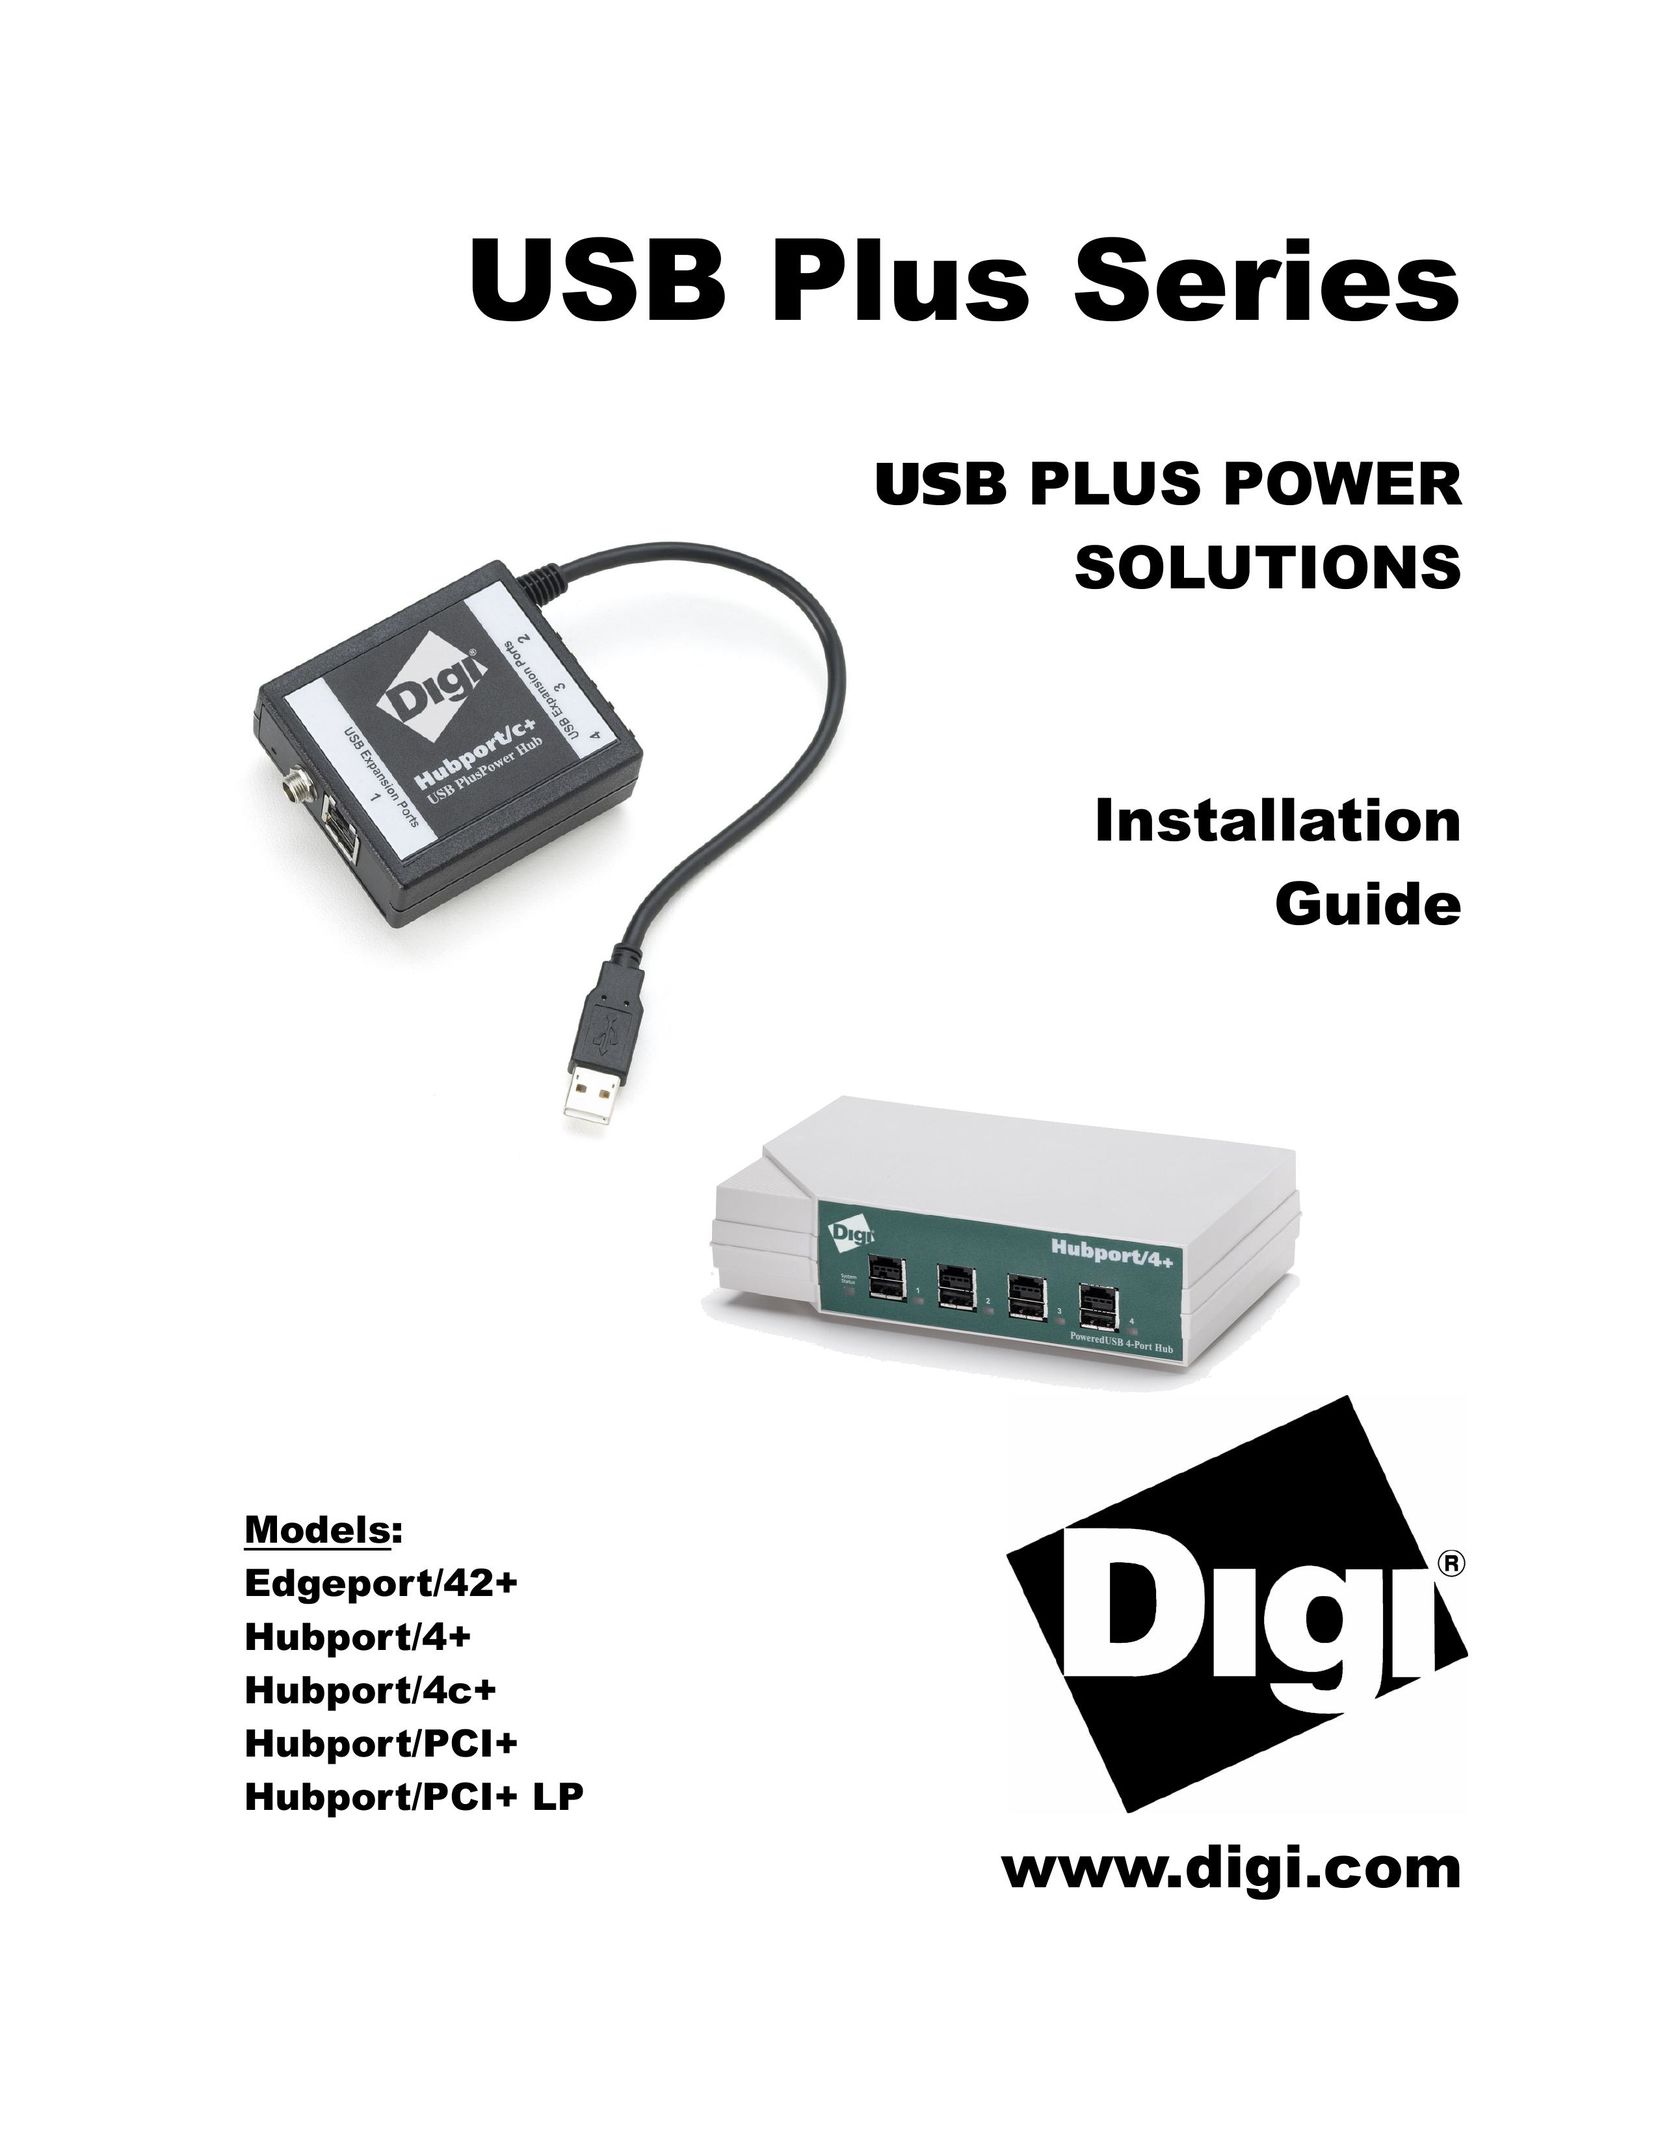 Digi Hubport/4c+ Computer Drive User Manual